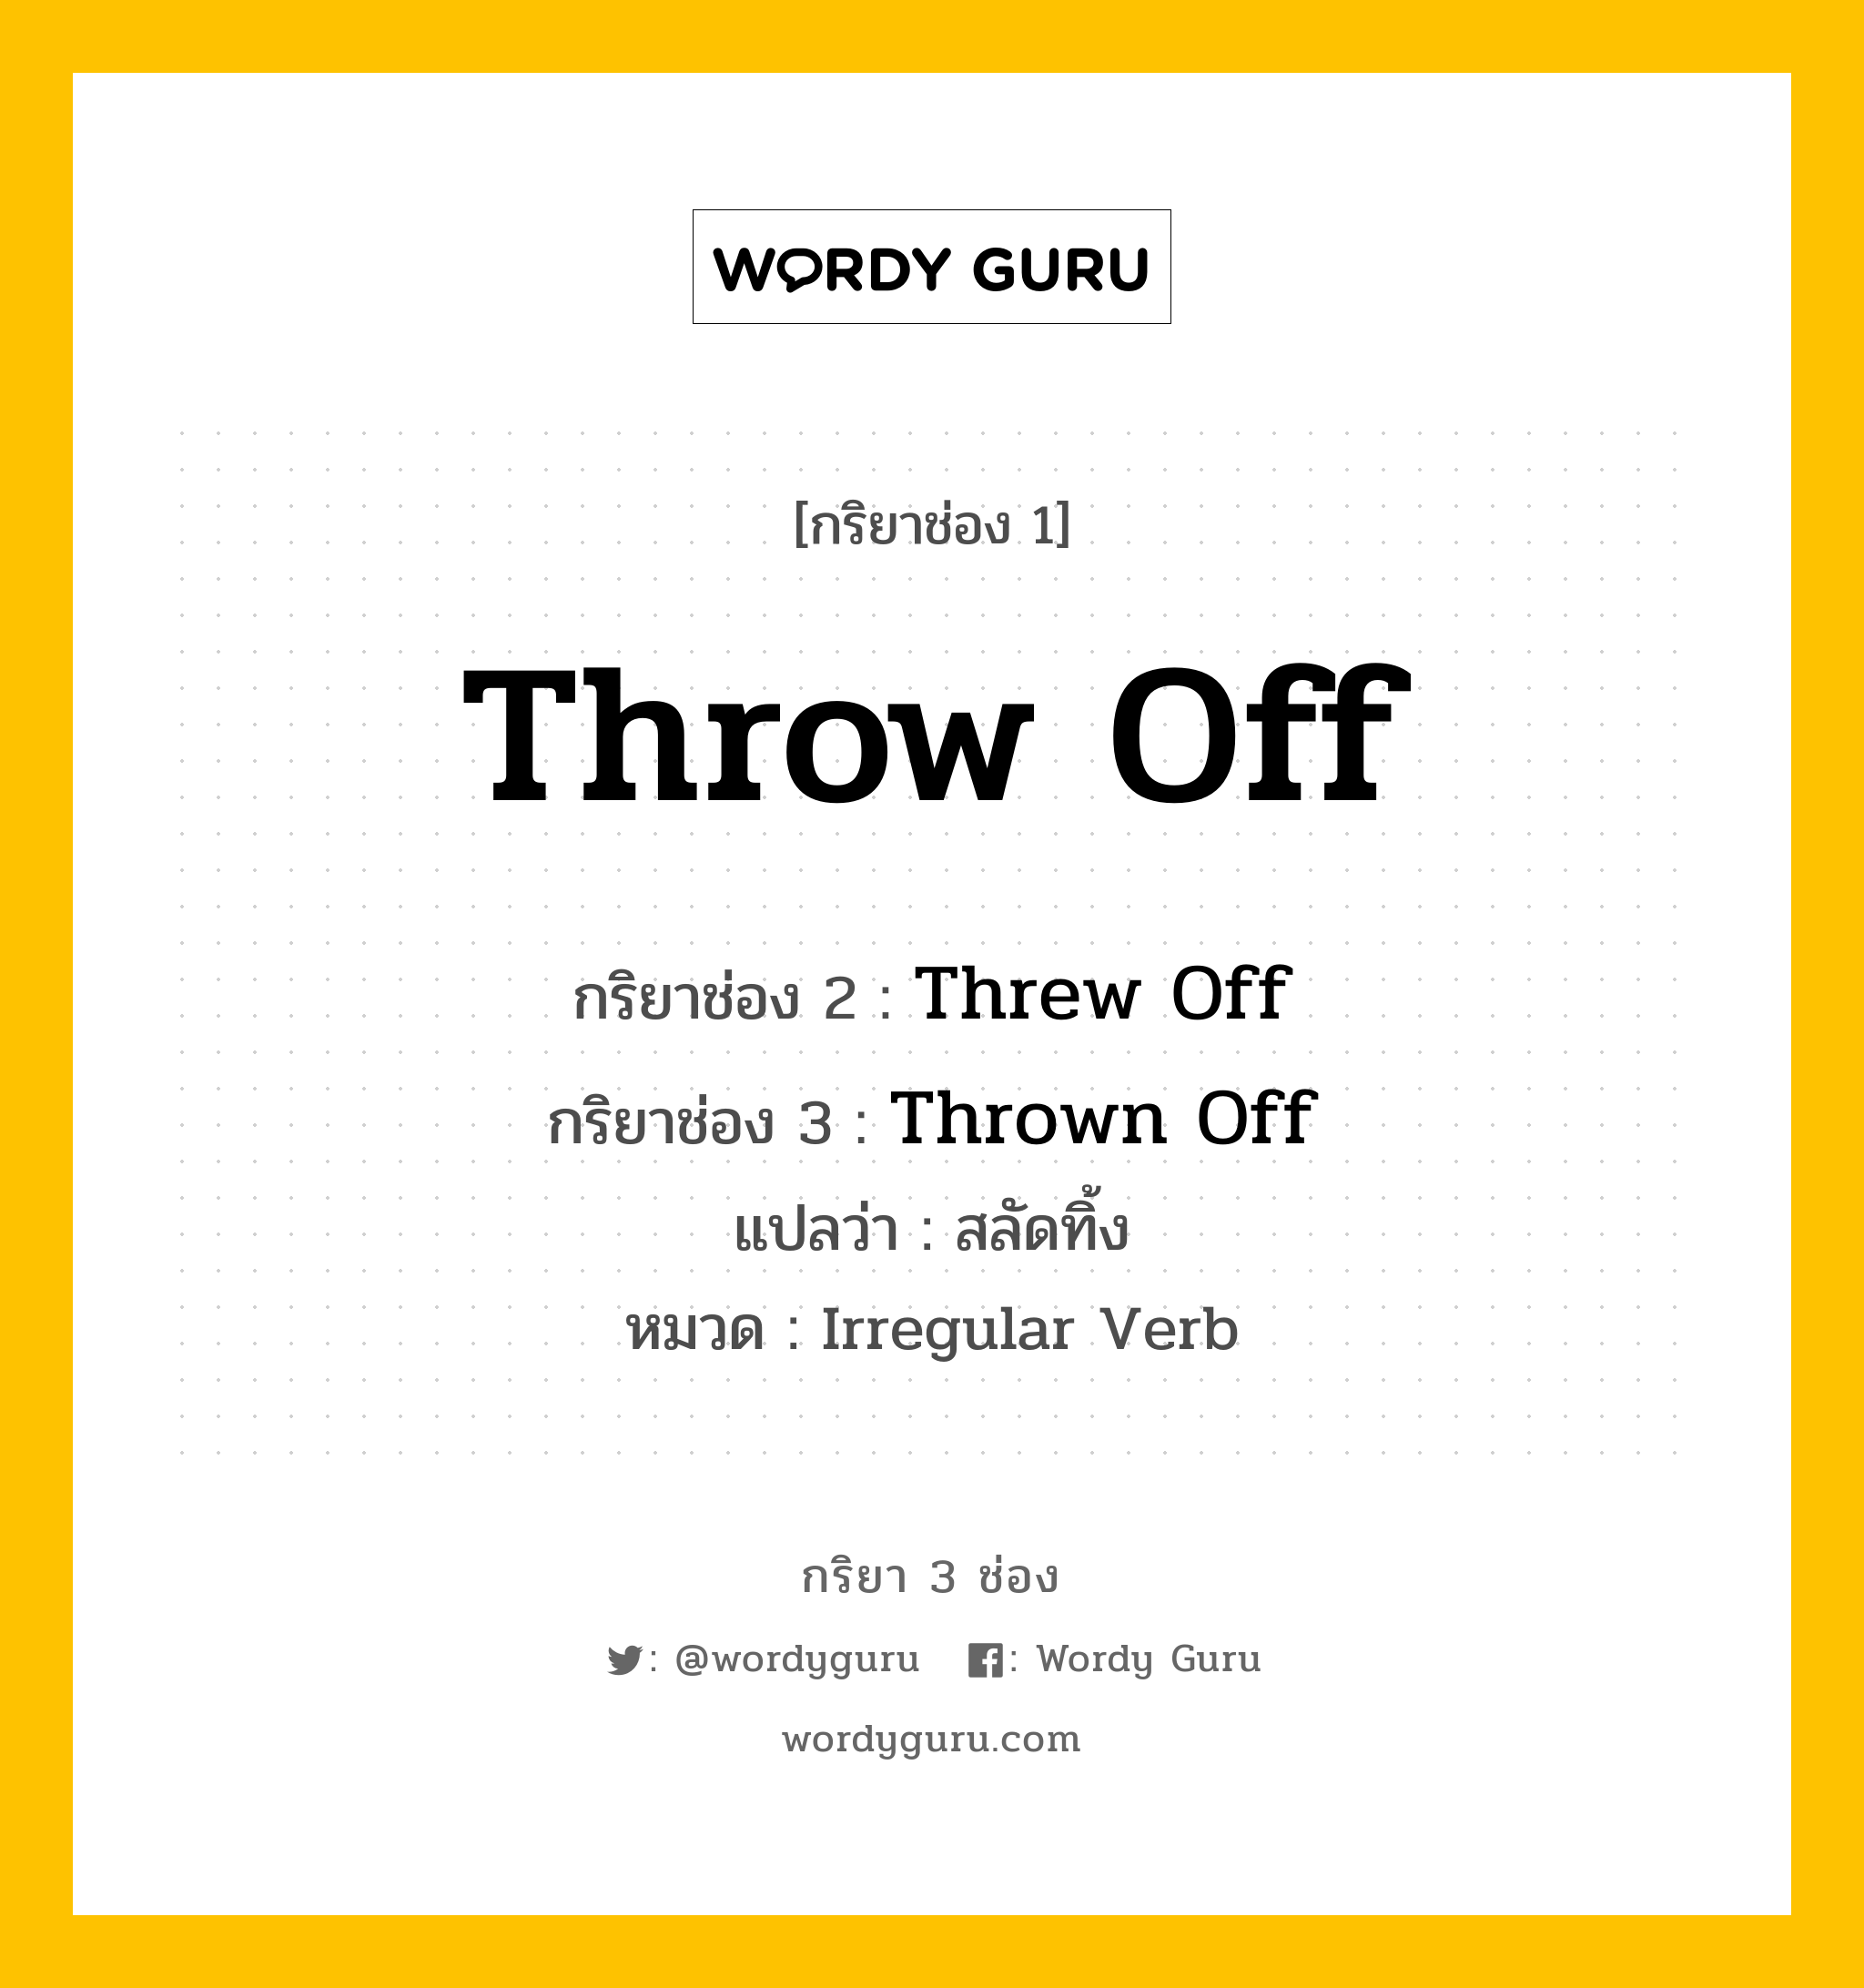 กริยา 3 ช่อง ของ Throw Off คืออะไร? มาดูคำอ่าน คำแปลกันเลย, กริยาช่อง 1 Throw Off กริยาช่อง 2 Threw Off กริยาช่อง 3 Thrown Off แปลว่า สลัดทิ้ง หมวด Irregular Verb หมวด Irregular Verb